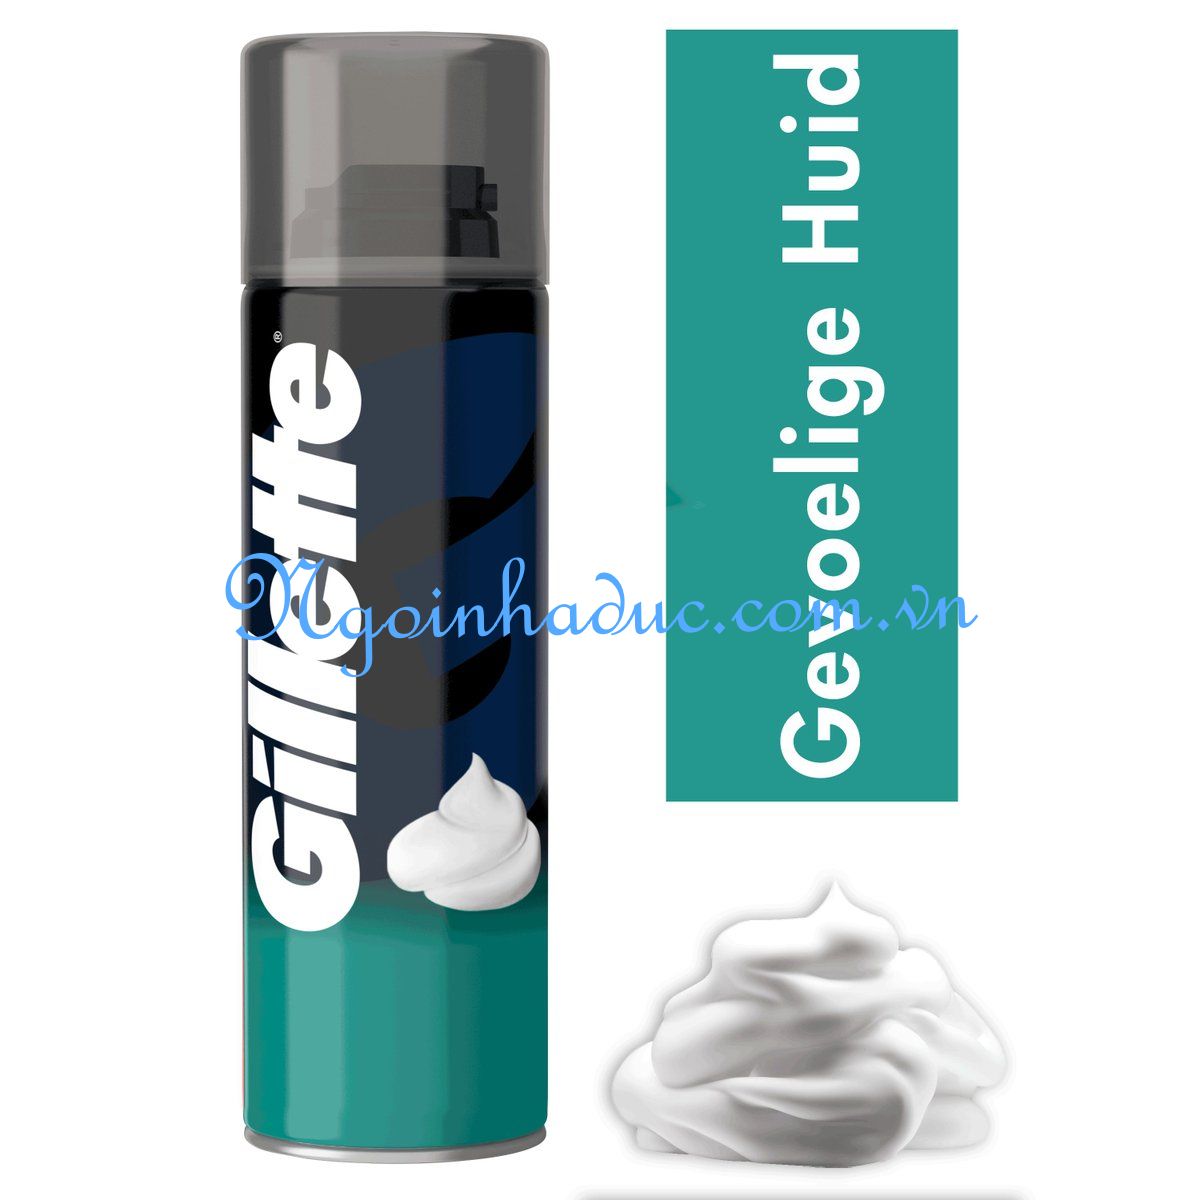 Bọt cạo râu Gillette xanh (Anh) 300ml